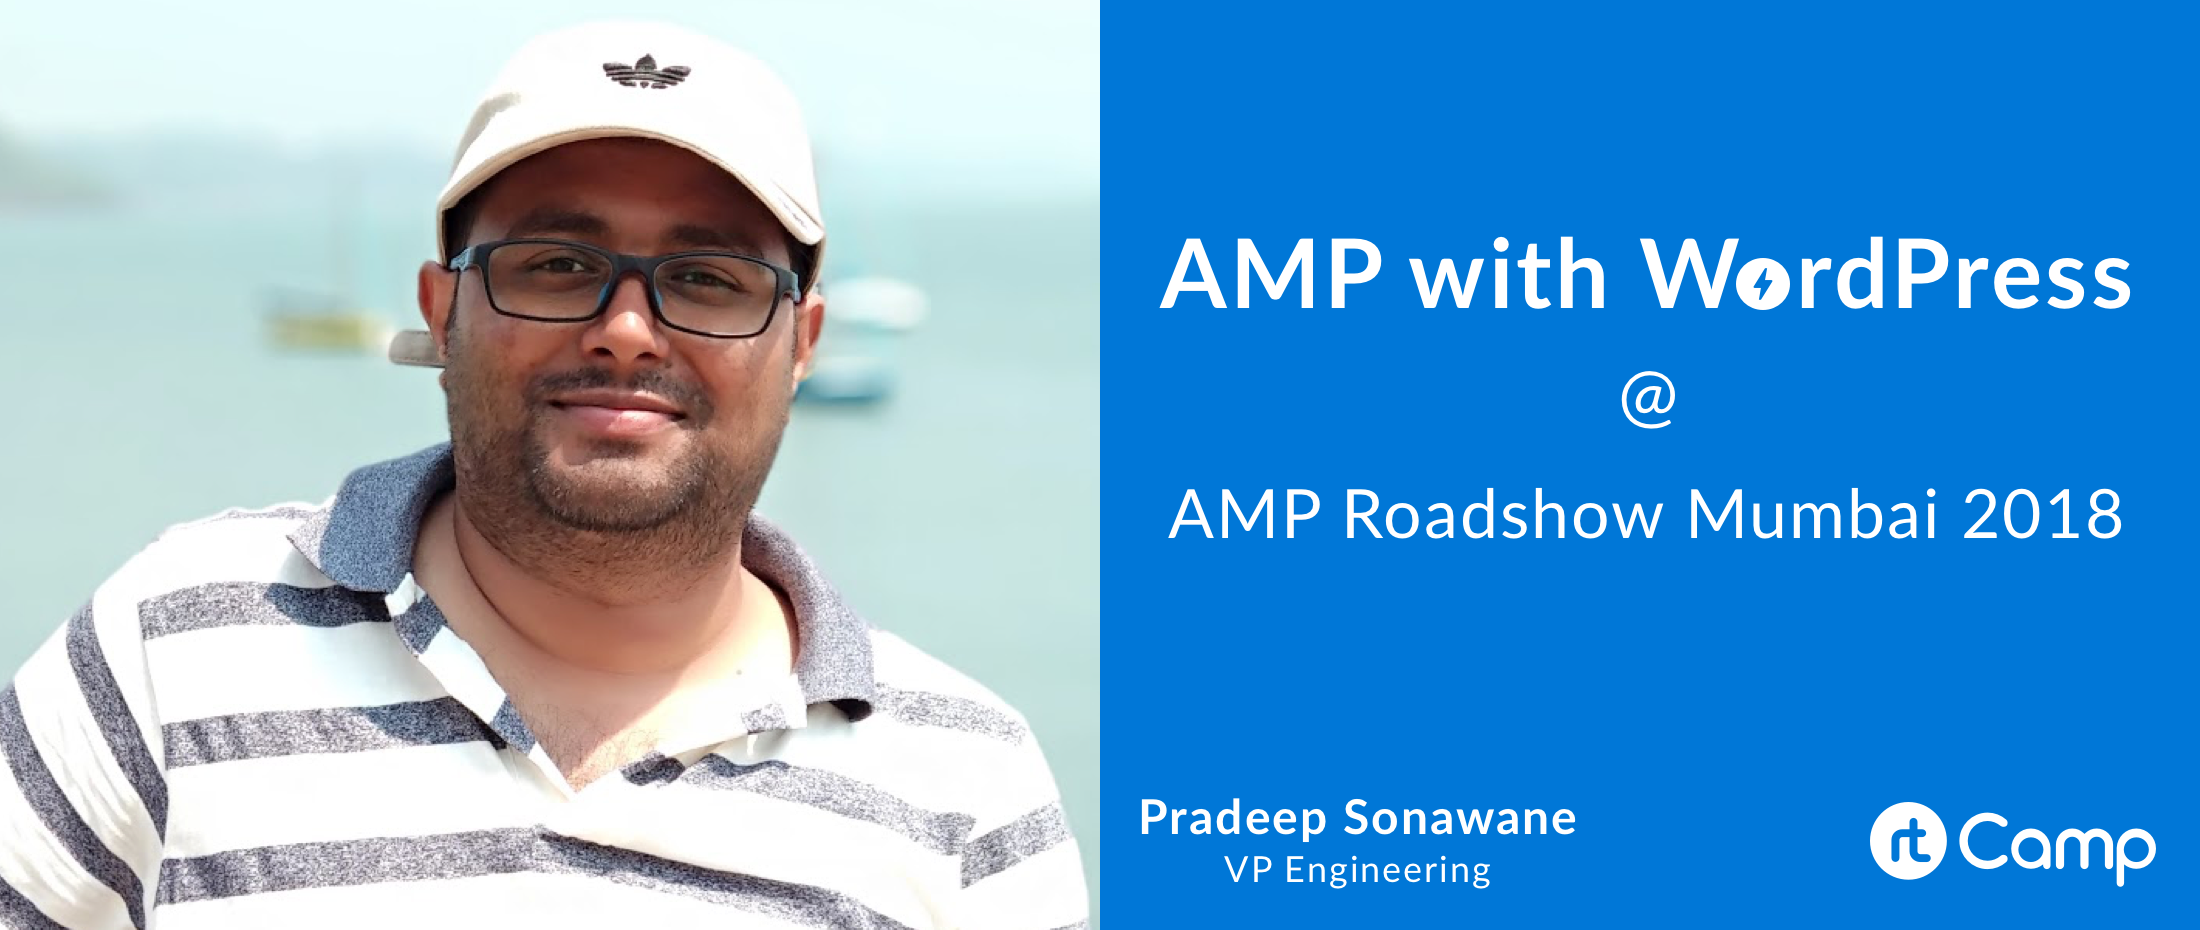 wordpress-amp-roadshow-mumbai-pradeep